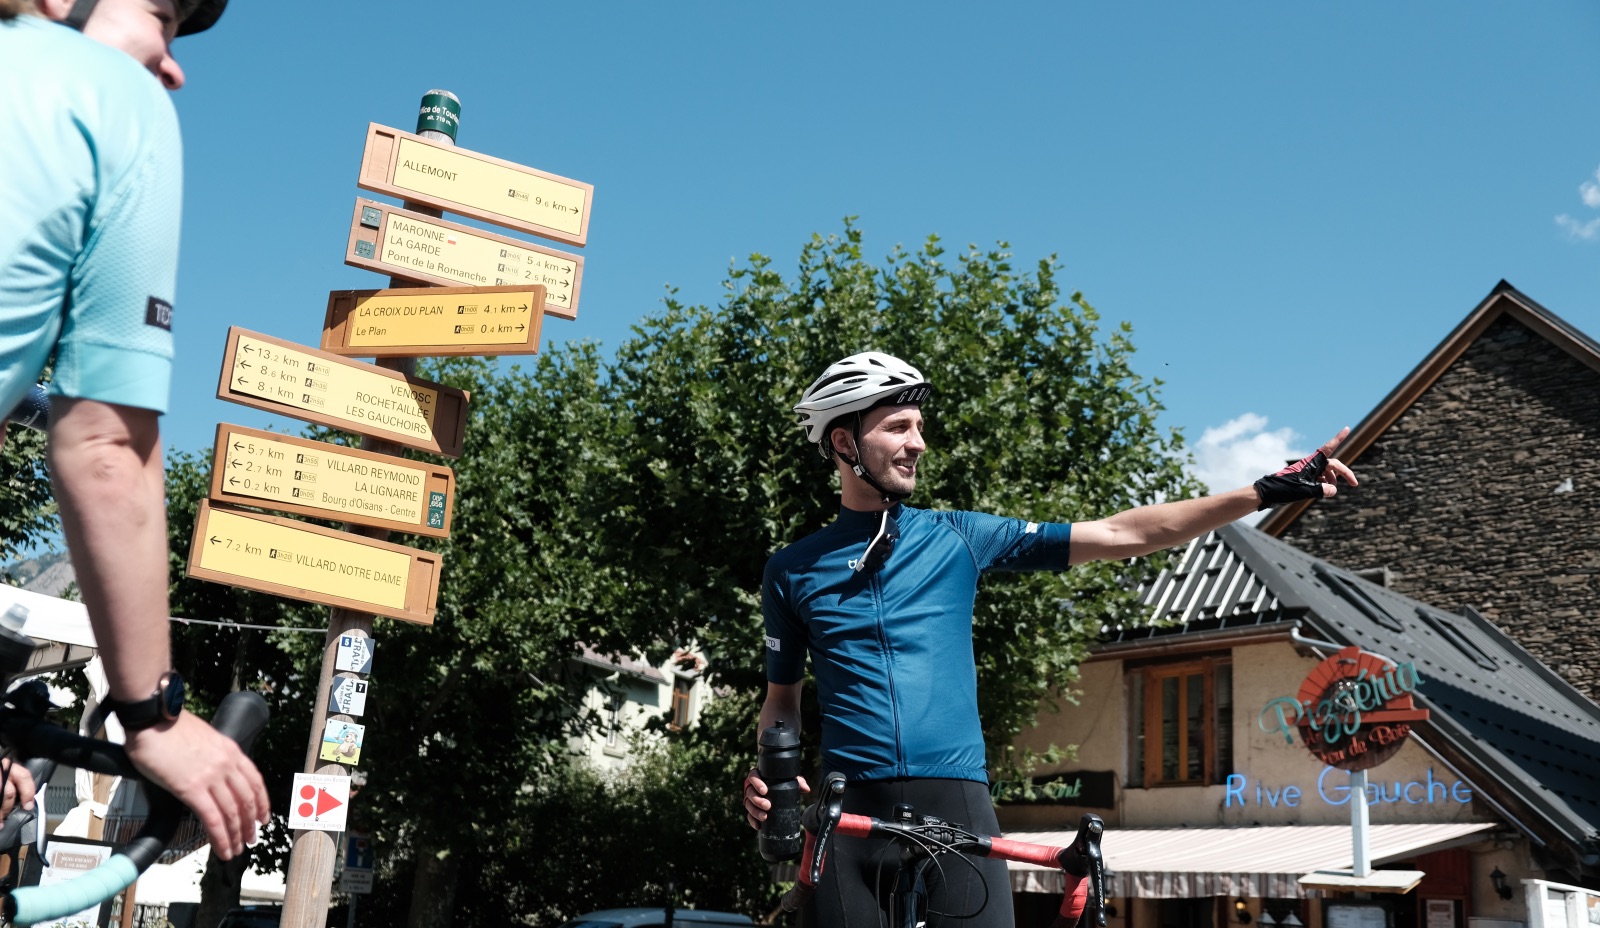 Wielrenner voor een wegwijzerbord in Bourg d'Oisans geeft uitleg